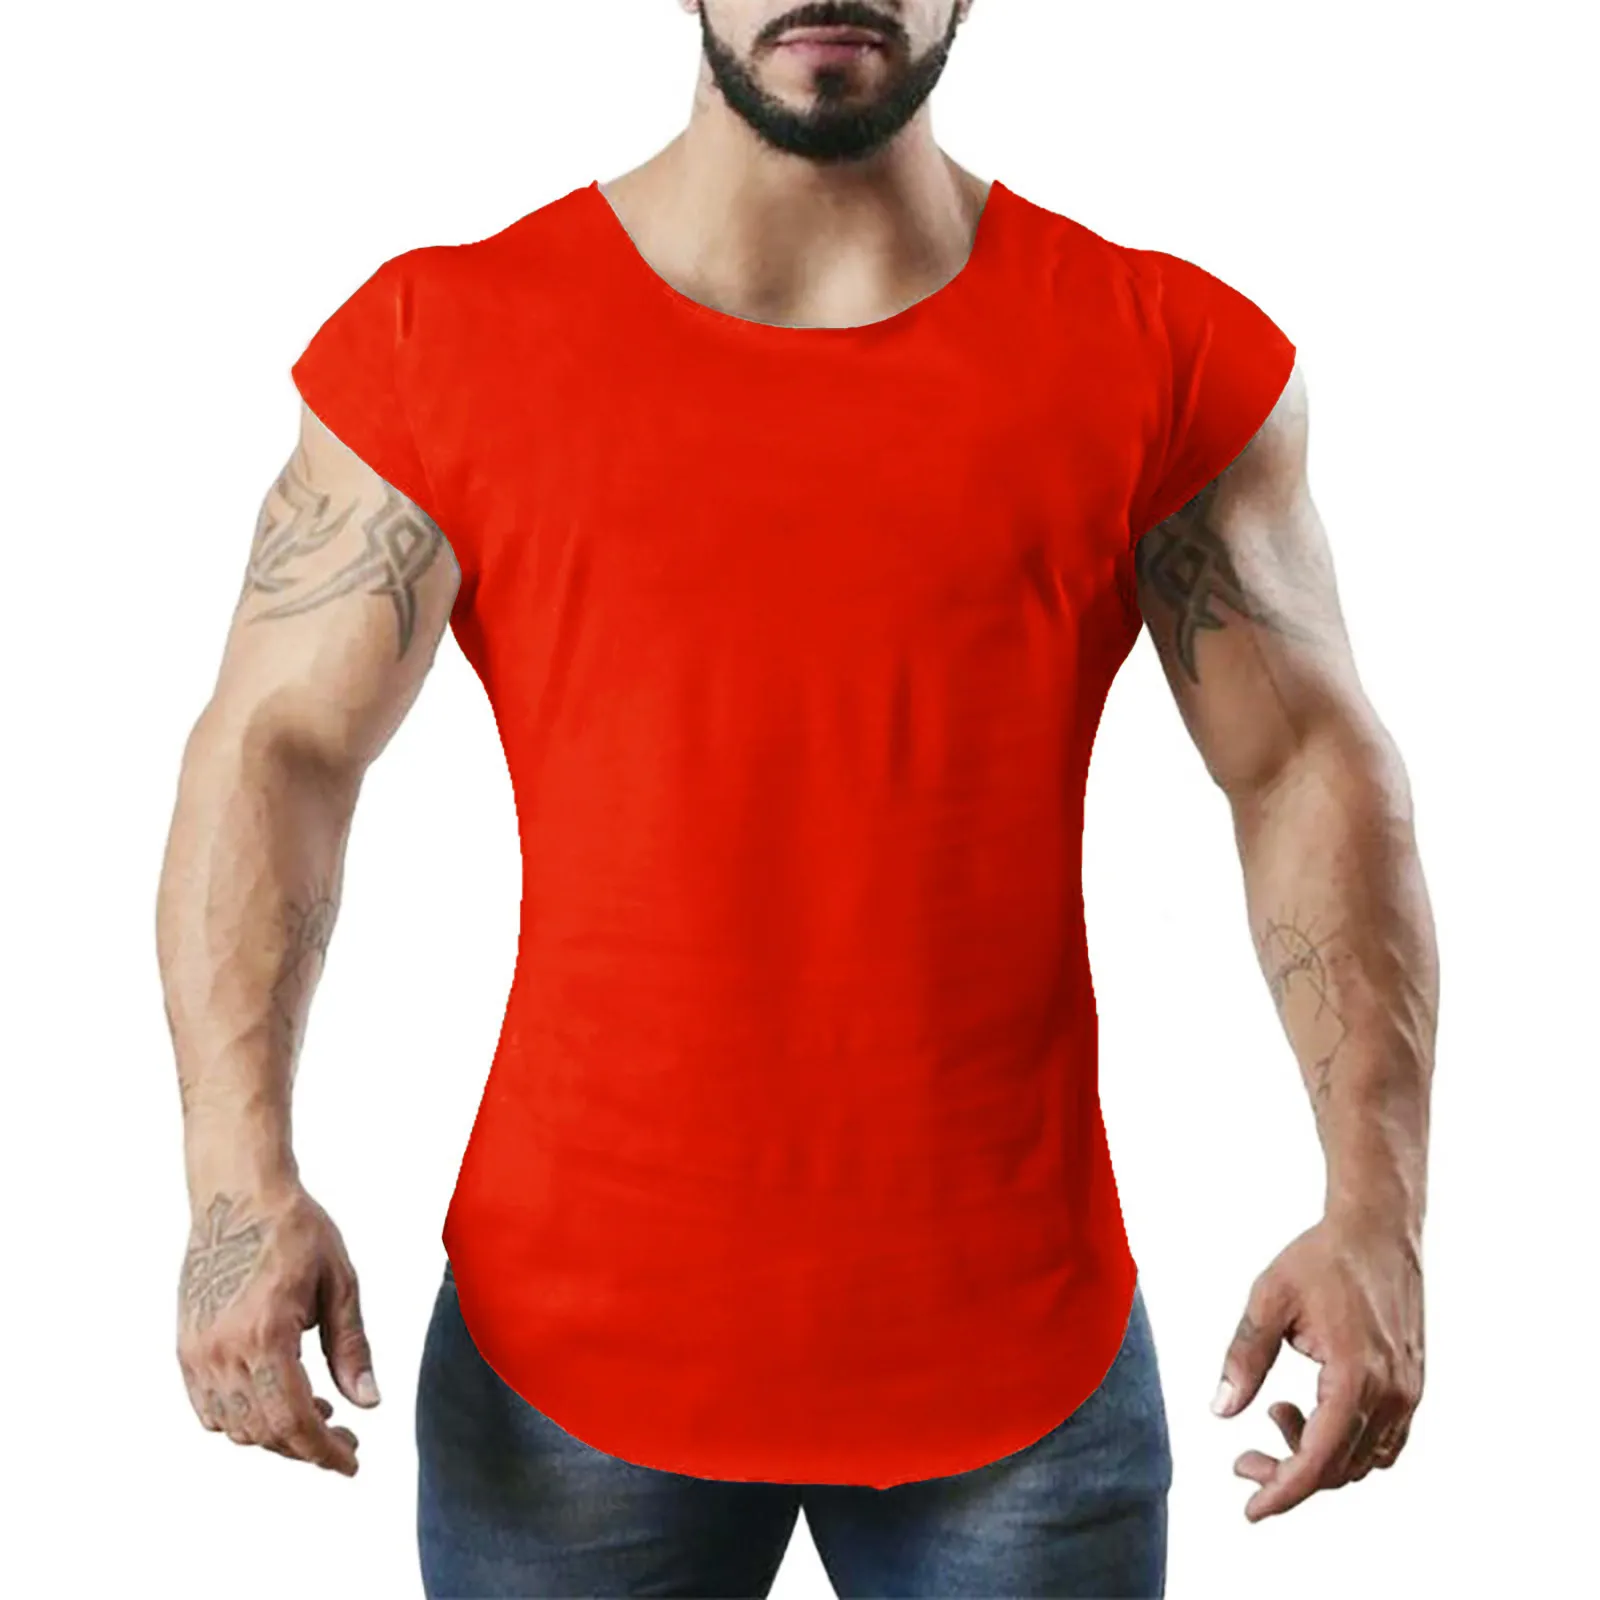 Märke Silodkläder Gyms Tight Tank Top Mens Fitness Stringer Sleeveless Shirt Gym Skjorta Män Fitness Summer Tops 210308